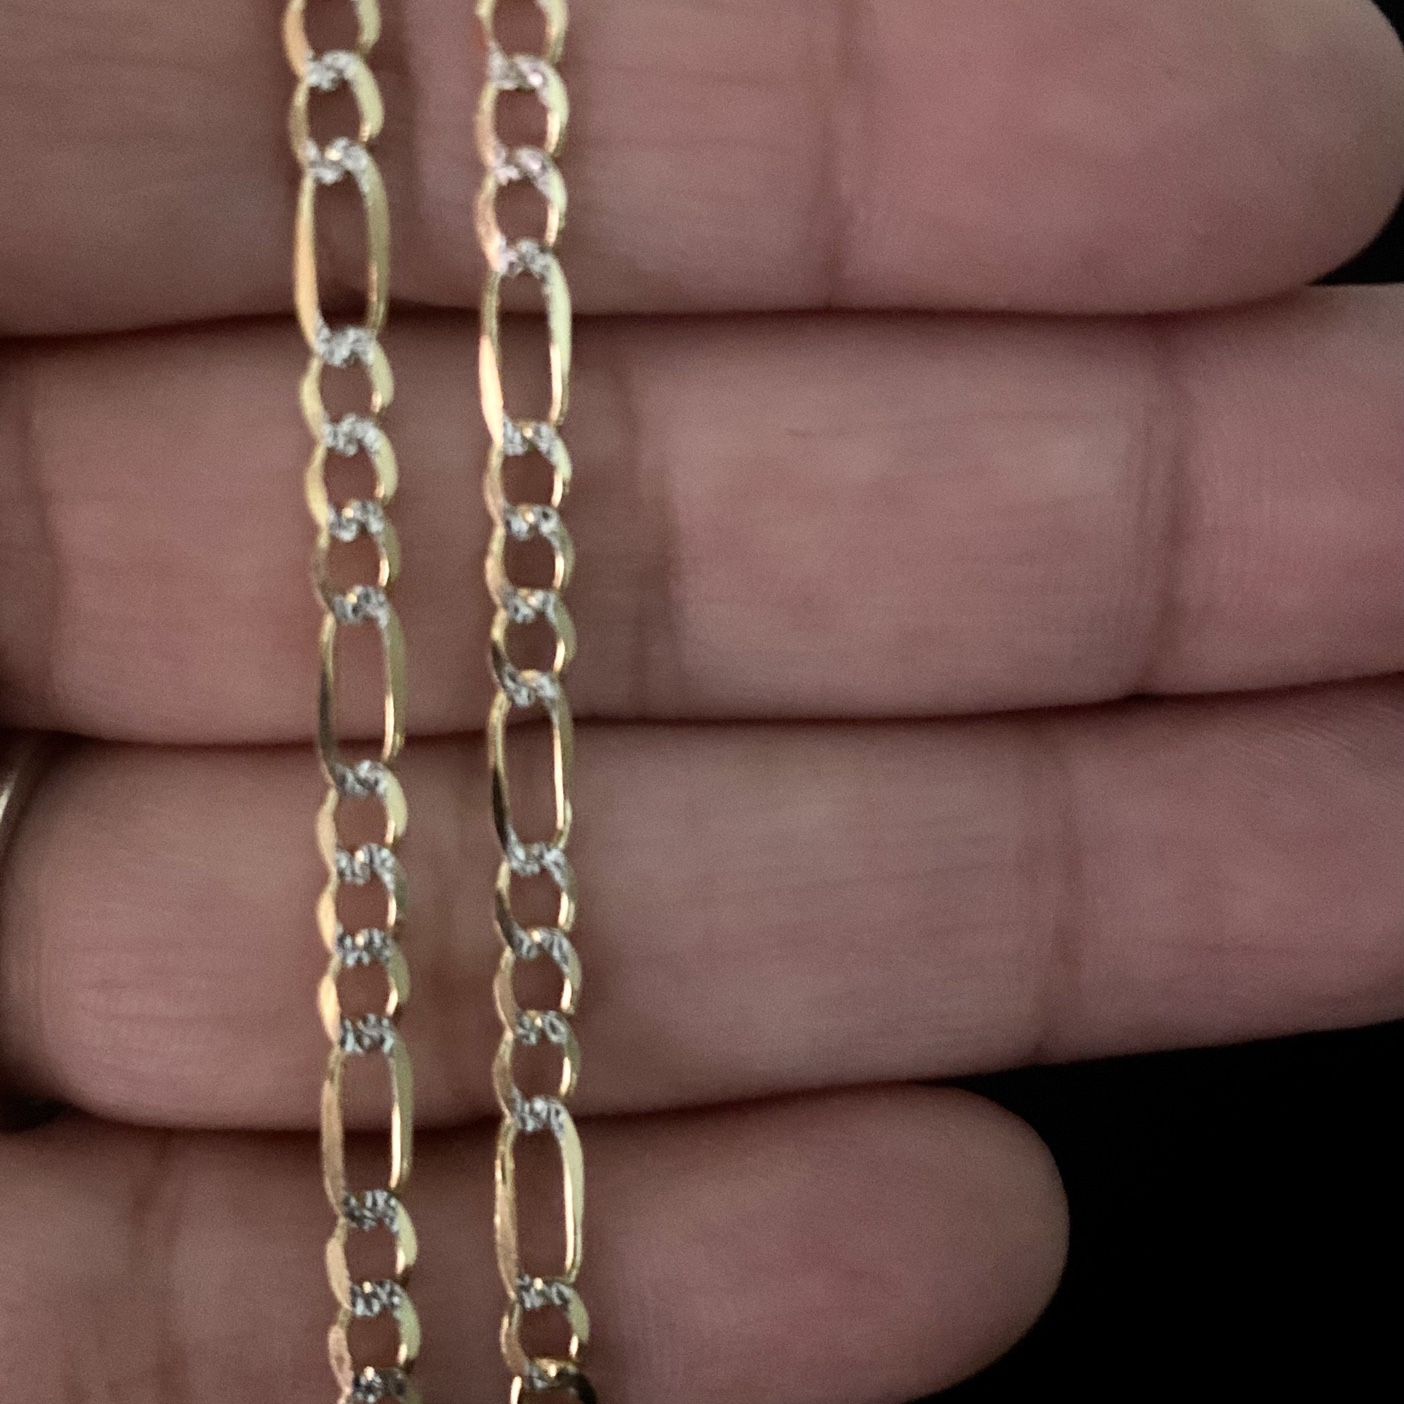 14k Gold Fígaro Chain Necklace 